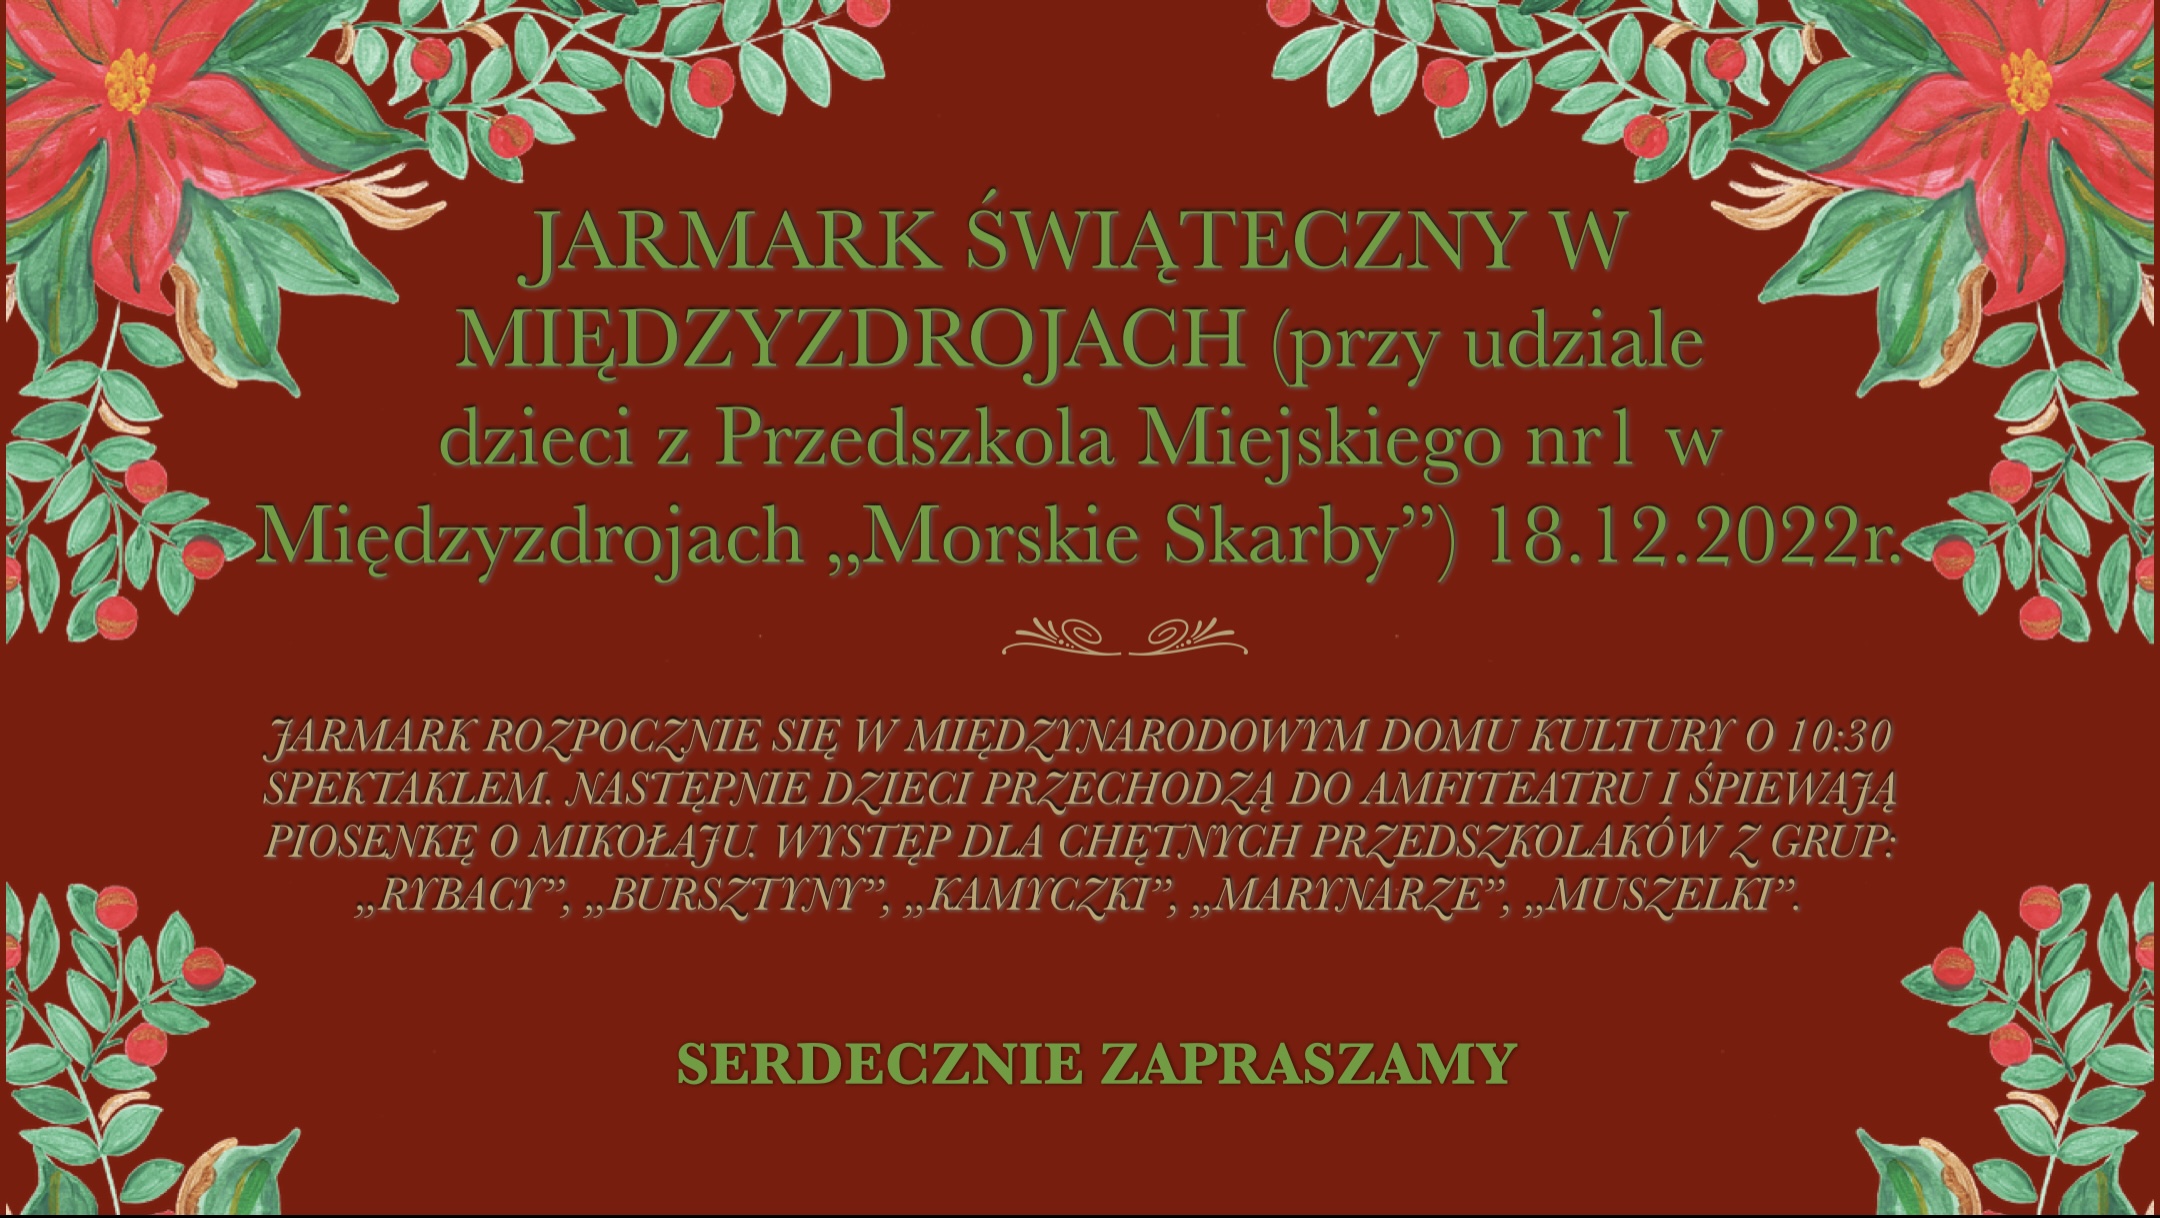 JARMARK ŚWIĄTECZNY 18.12.2022r.